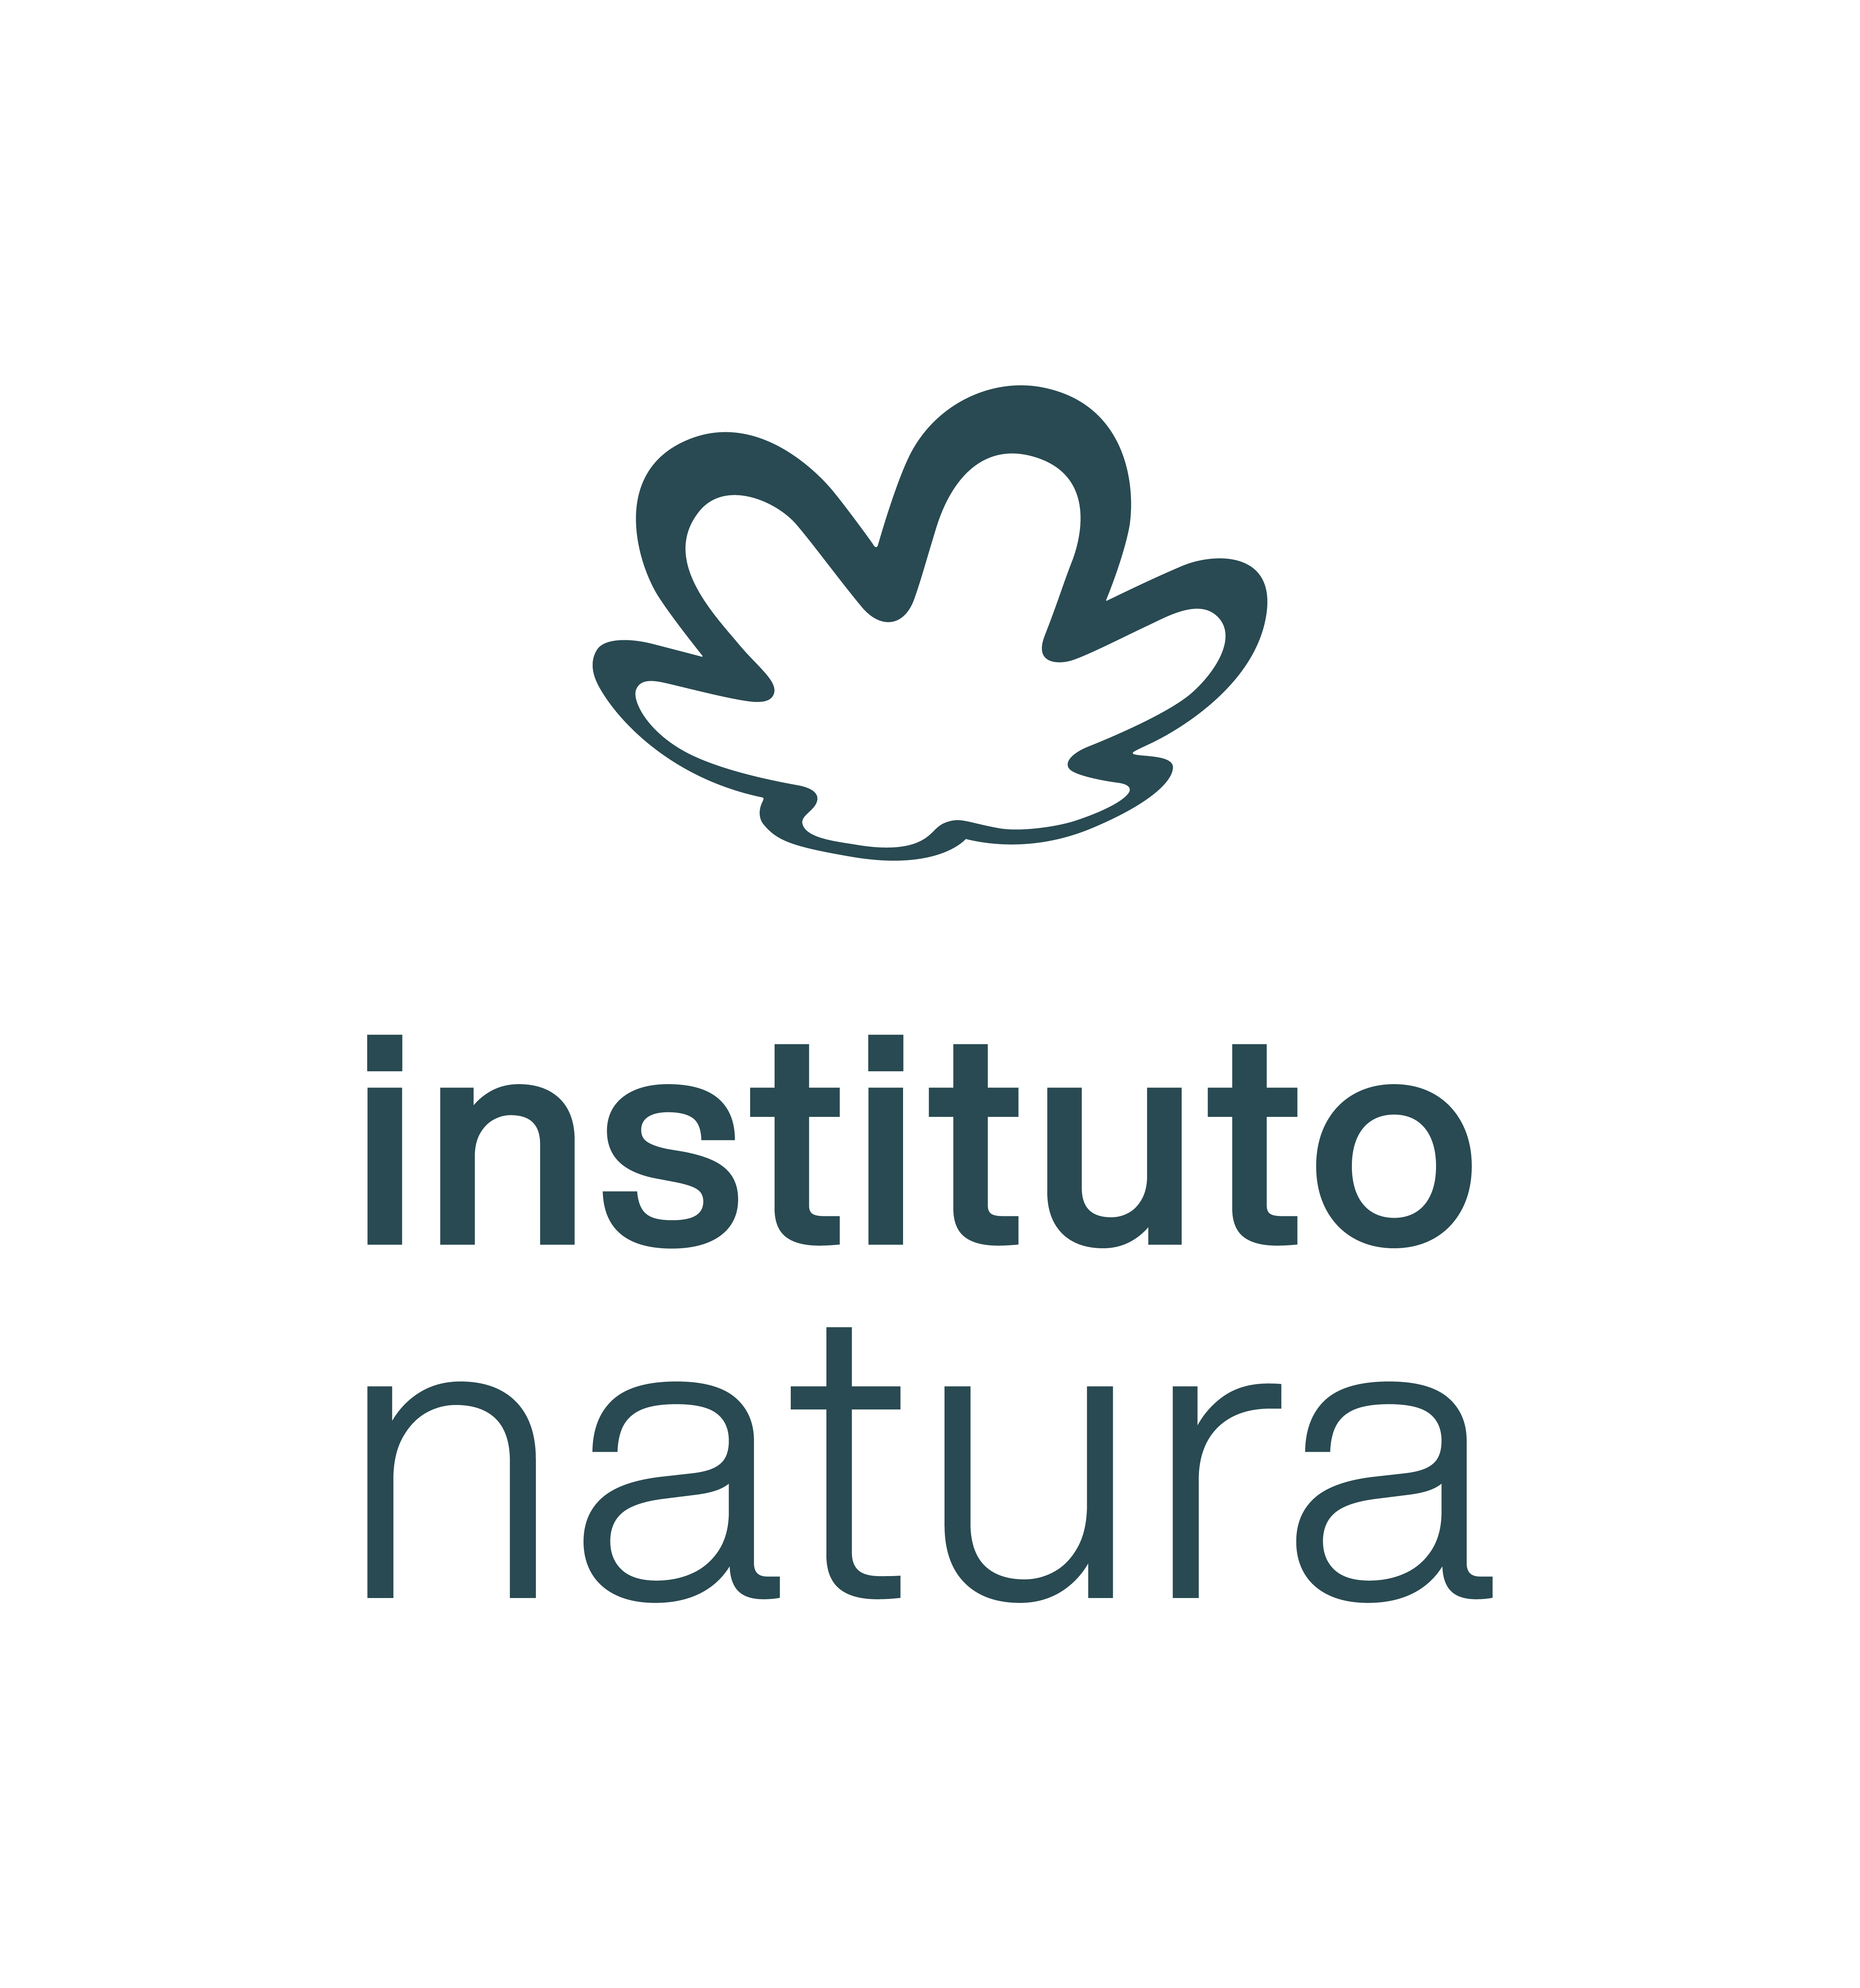 Instituto Natura